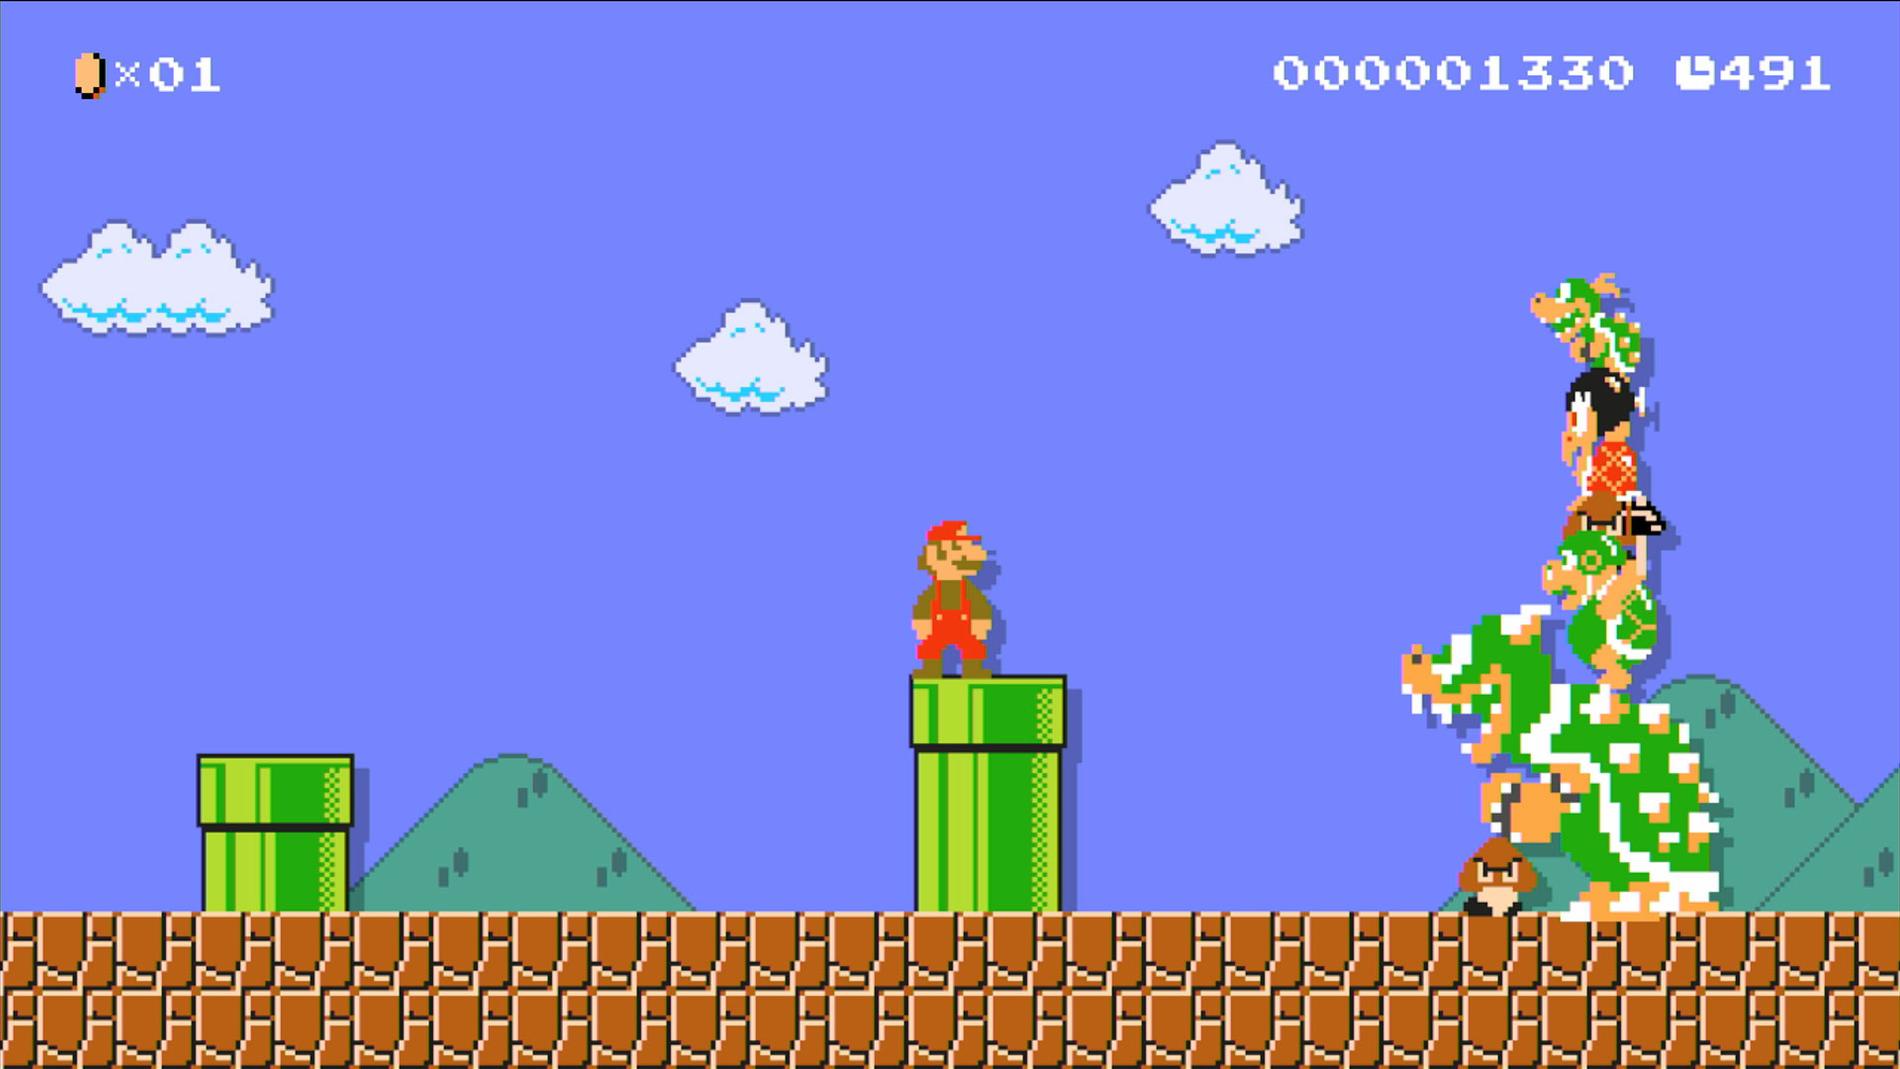 ”Super Mario maker”.